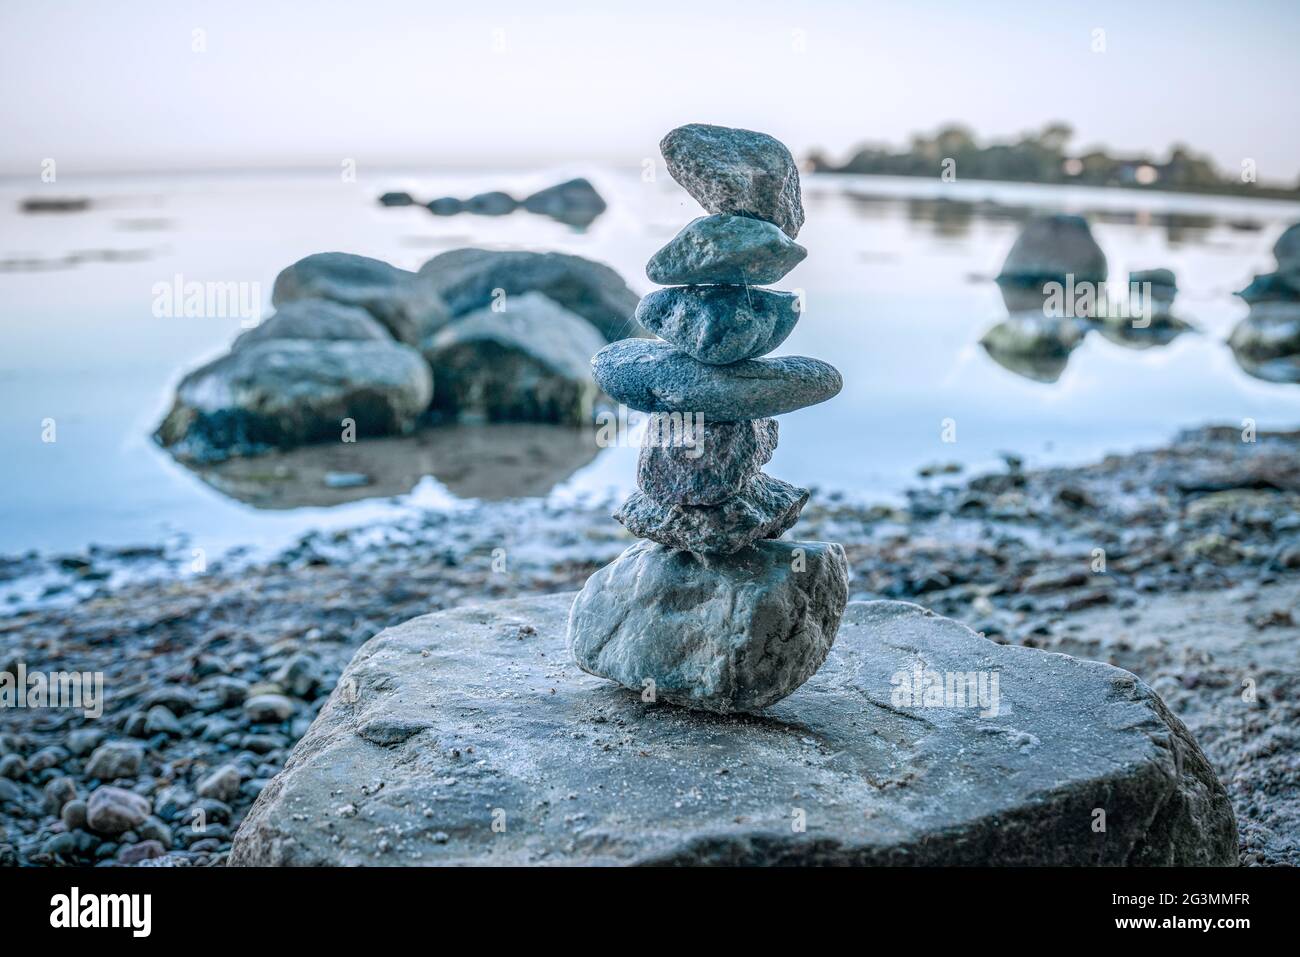 Small cairn of rocks on Wreechen beach on baltic sea island Ruegen Stock Photo